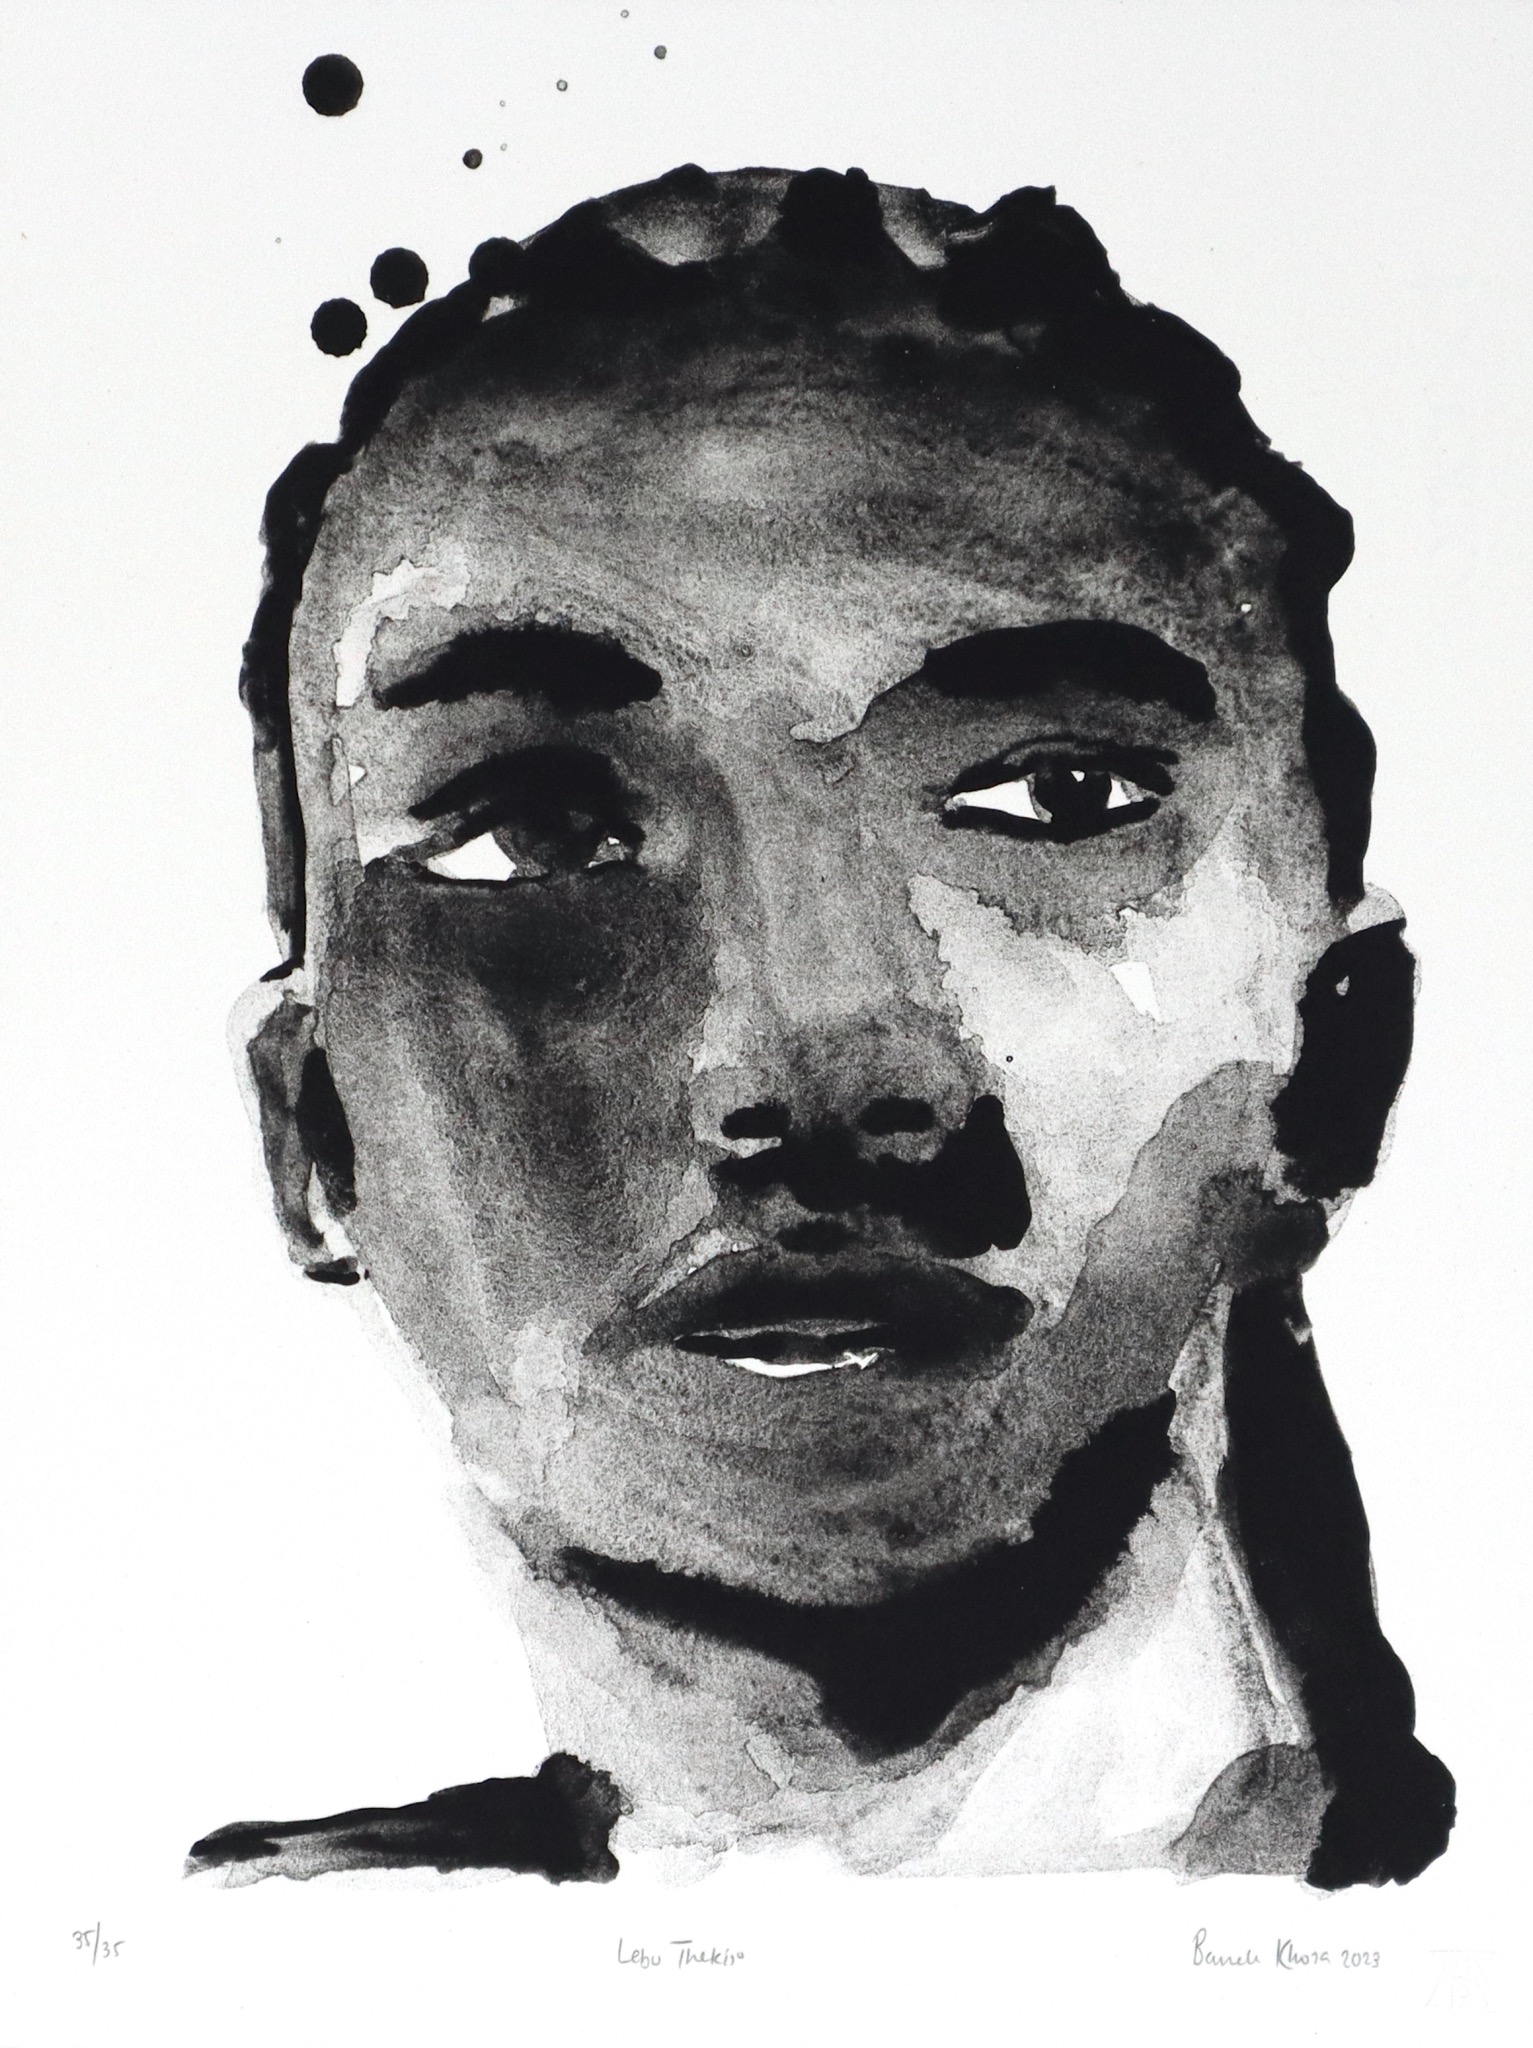 Banele Khoza portrait of Lebo Thekiso